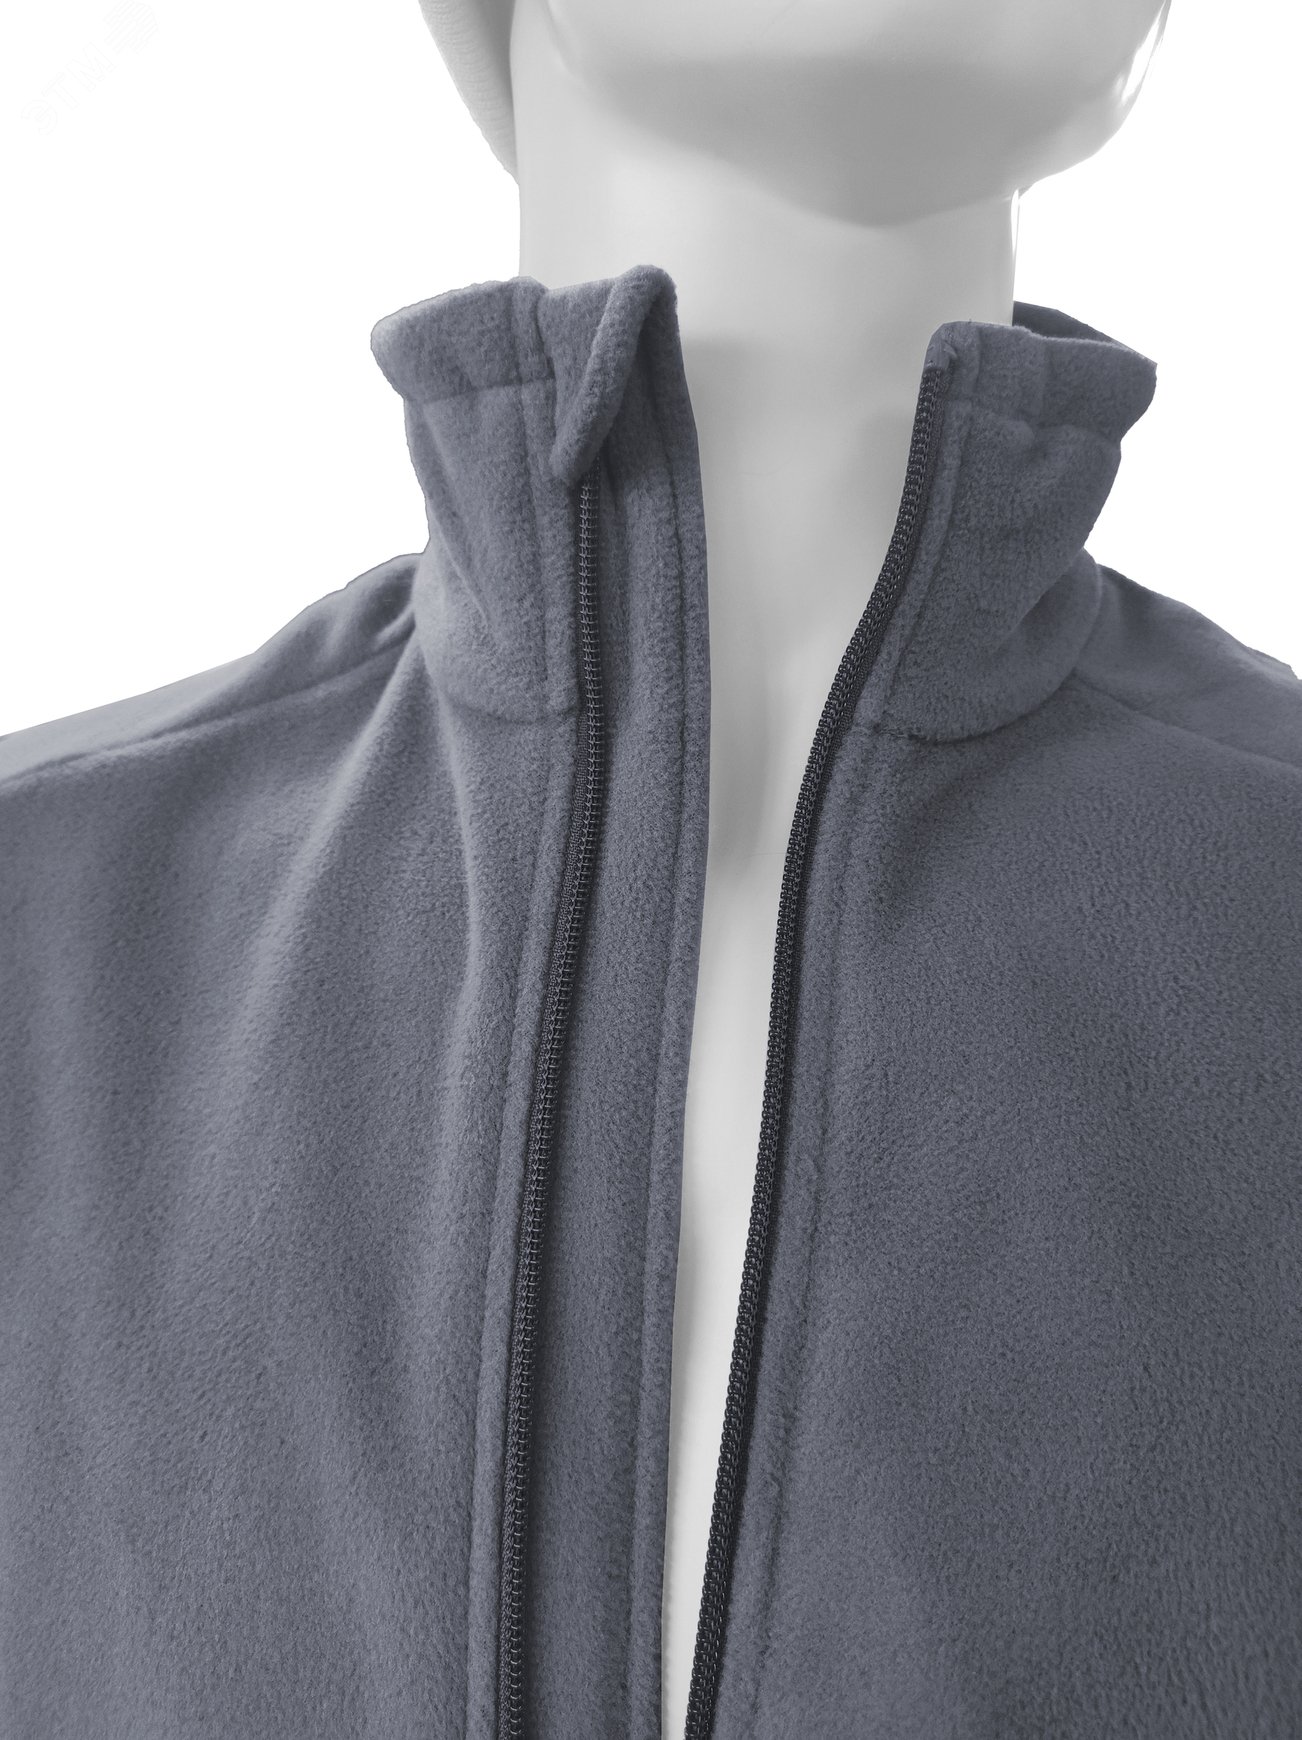 Куртка флисовая арт. JF-01 на молнии цв. серый 60-62 р. 2 ХL 142302 Эталон-Спецодежда - превью 9